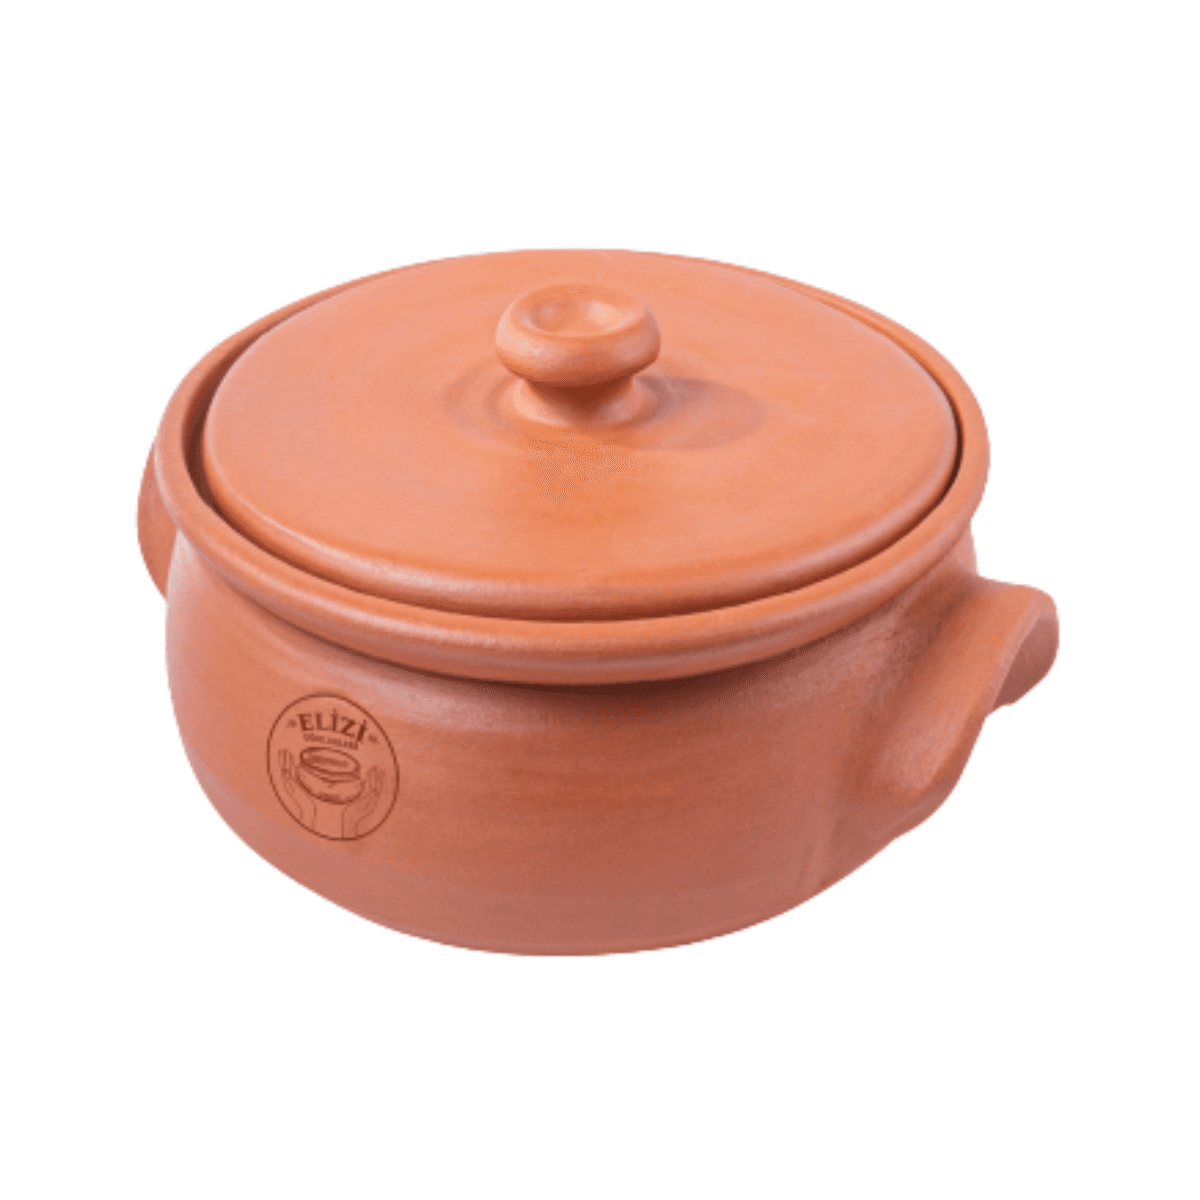 قدر فخار للطبخ 6.5 لتر إليزي Elizi Clay Lined Pot